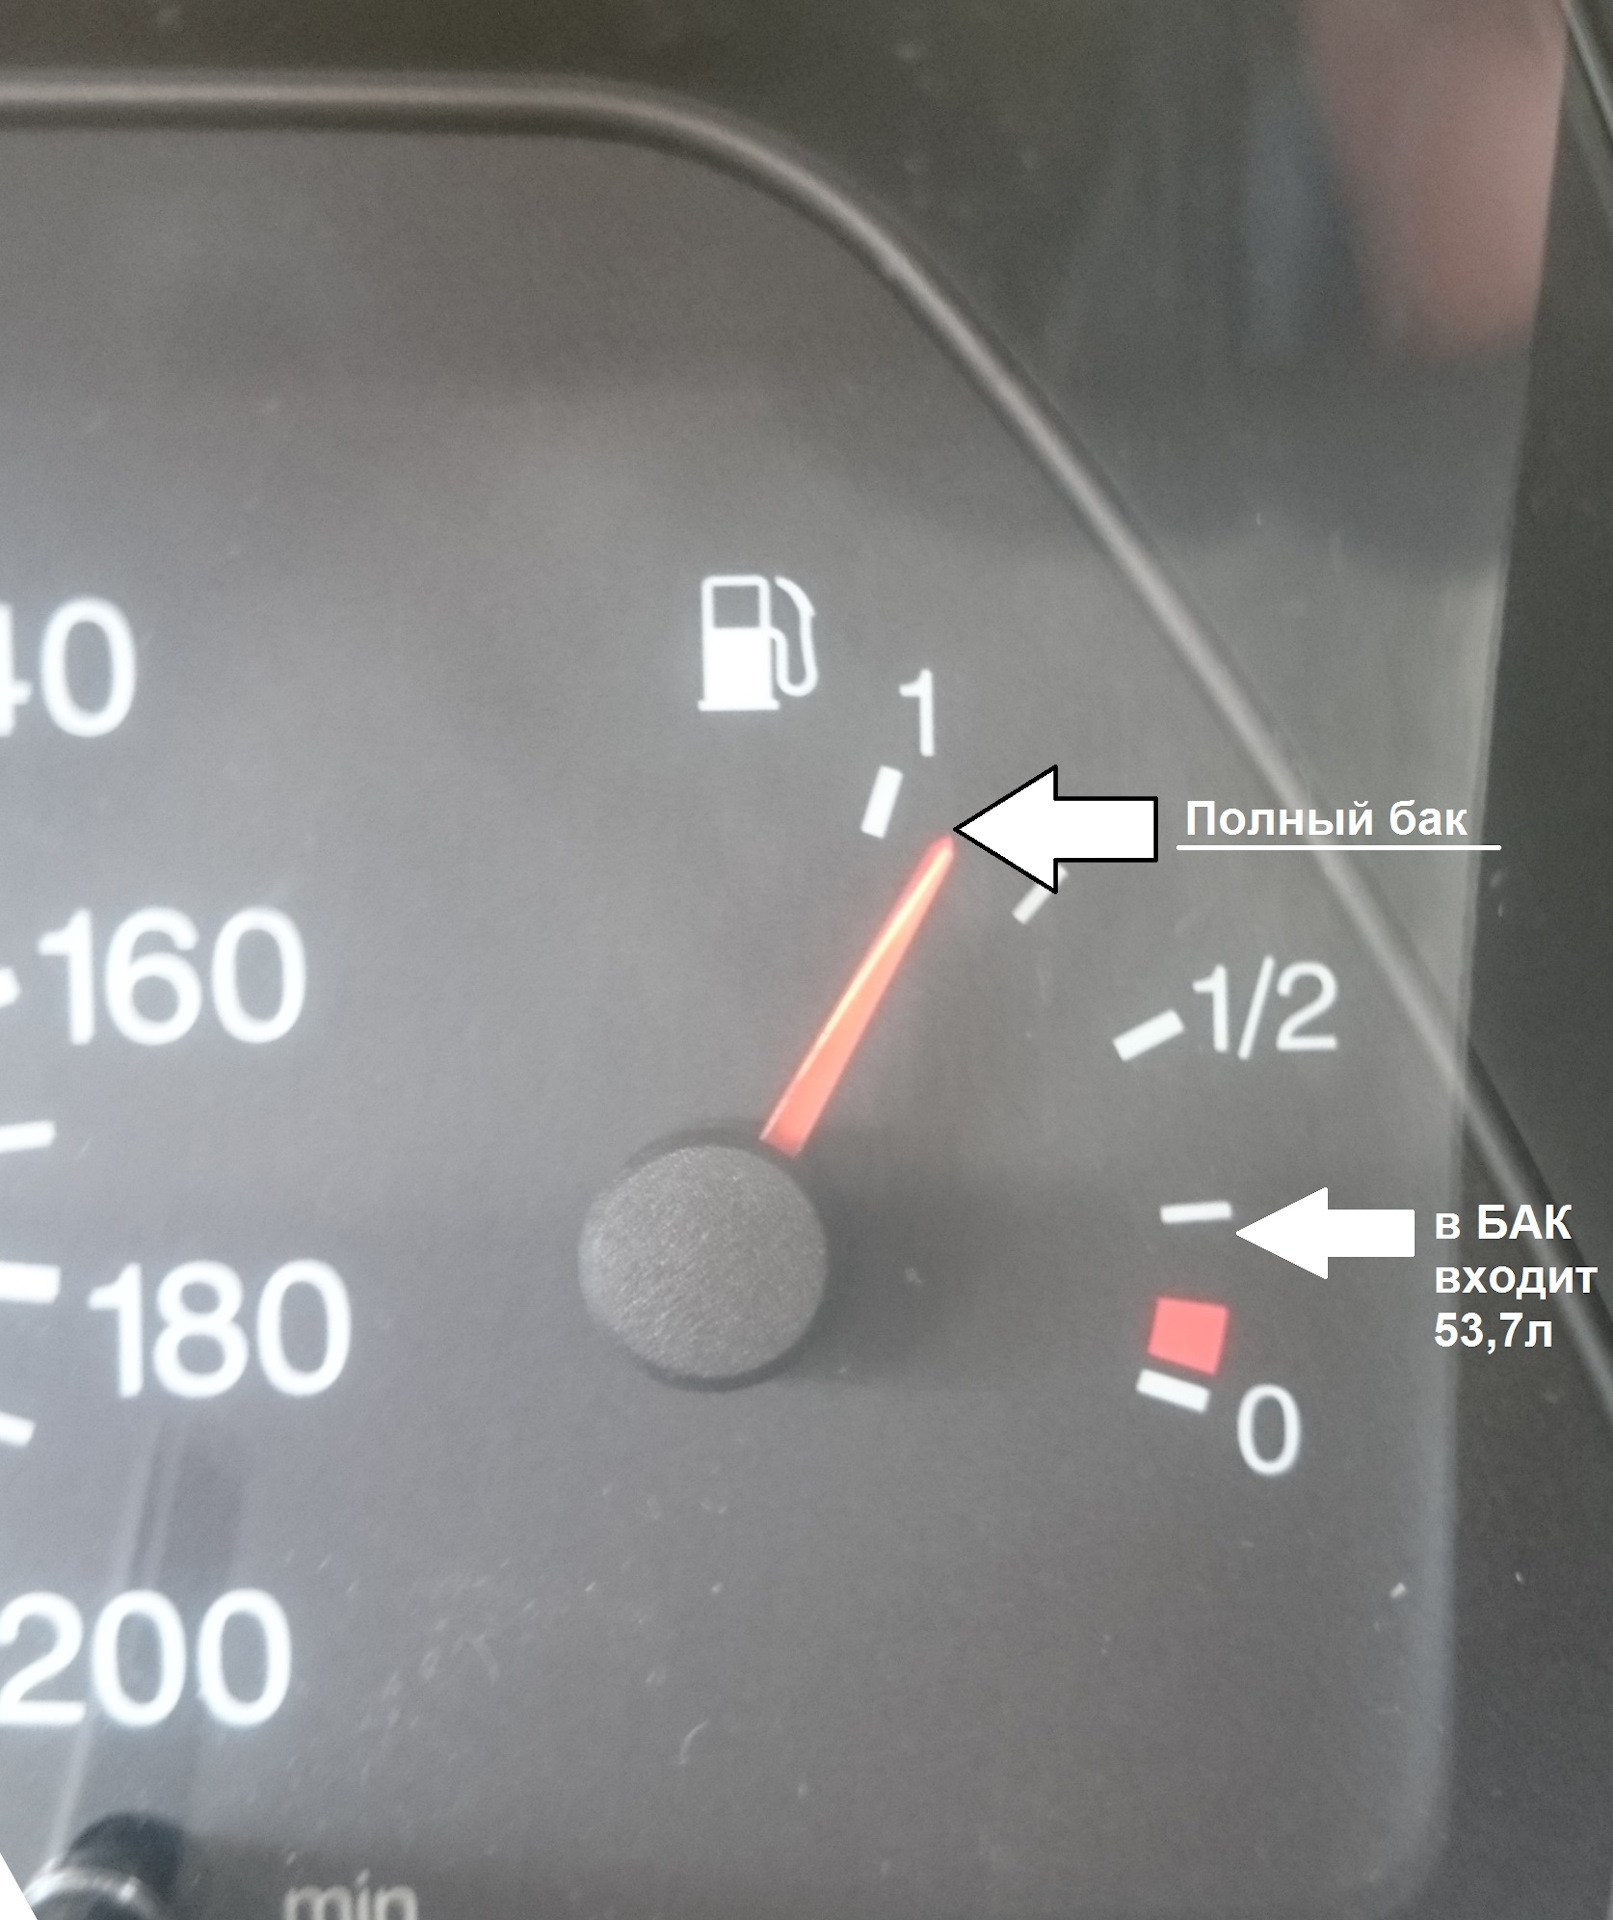 Сколько литров бензина входит в бак ваз 2110